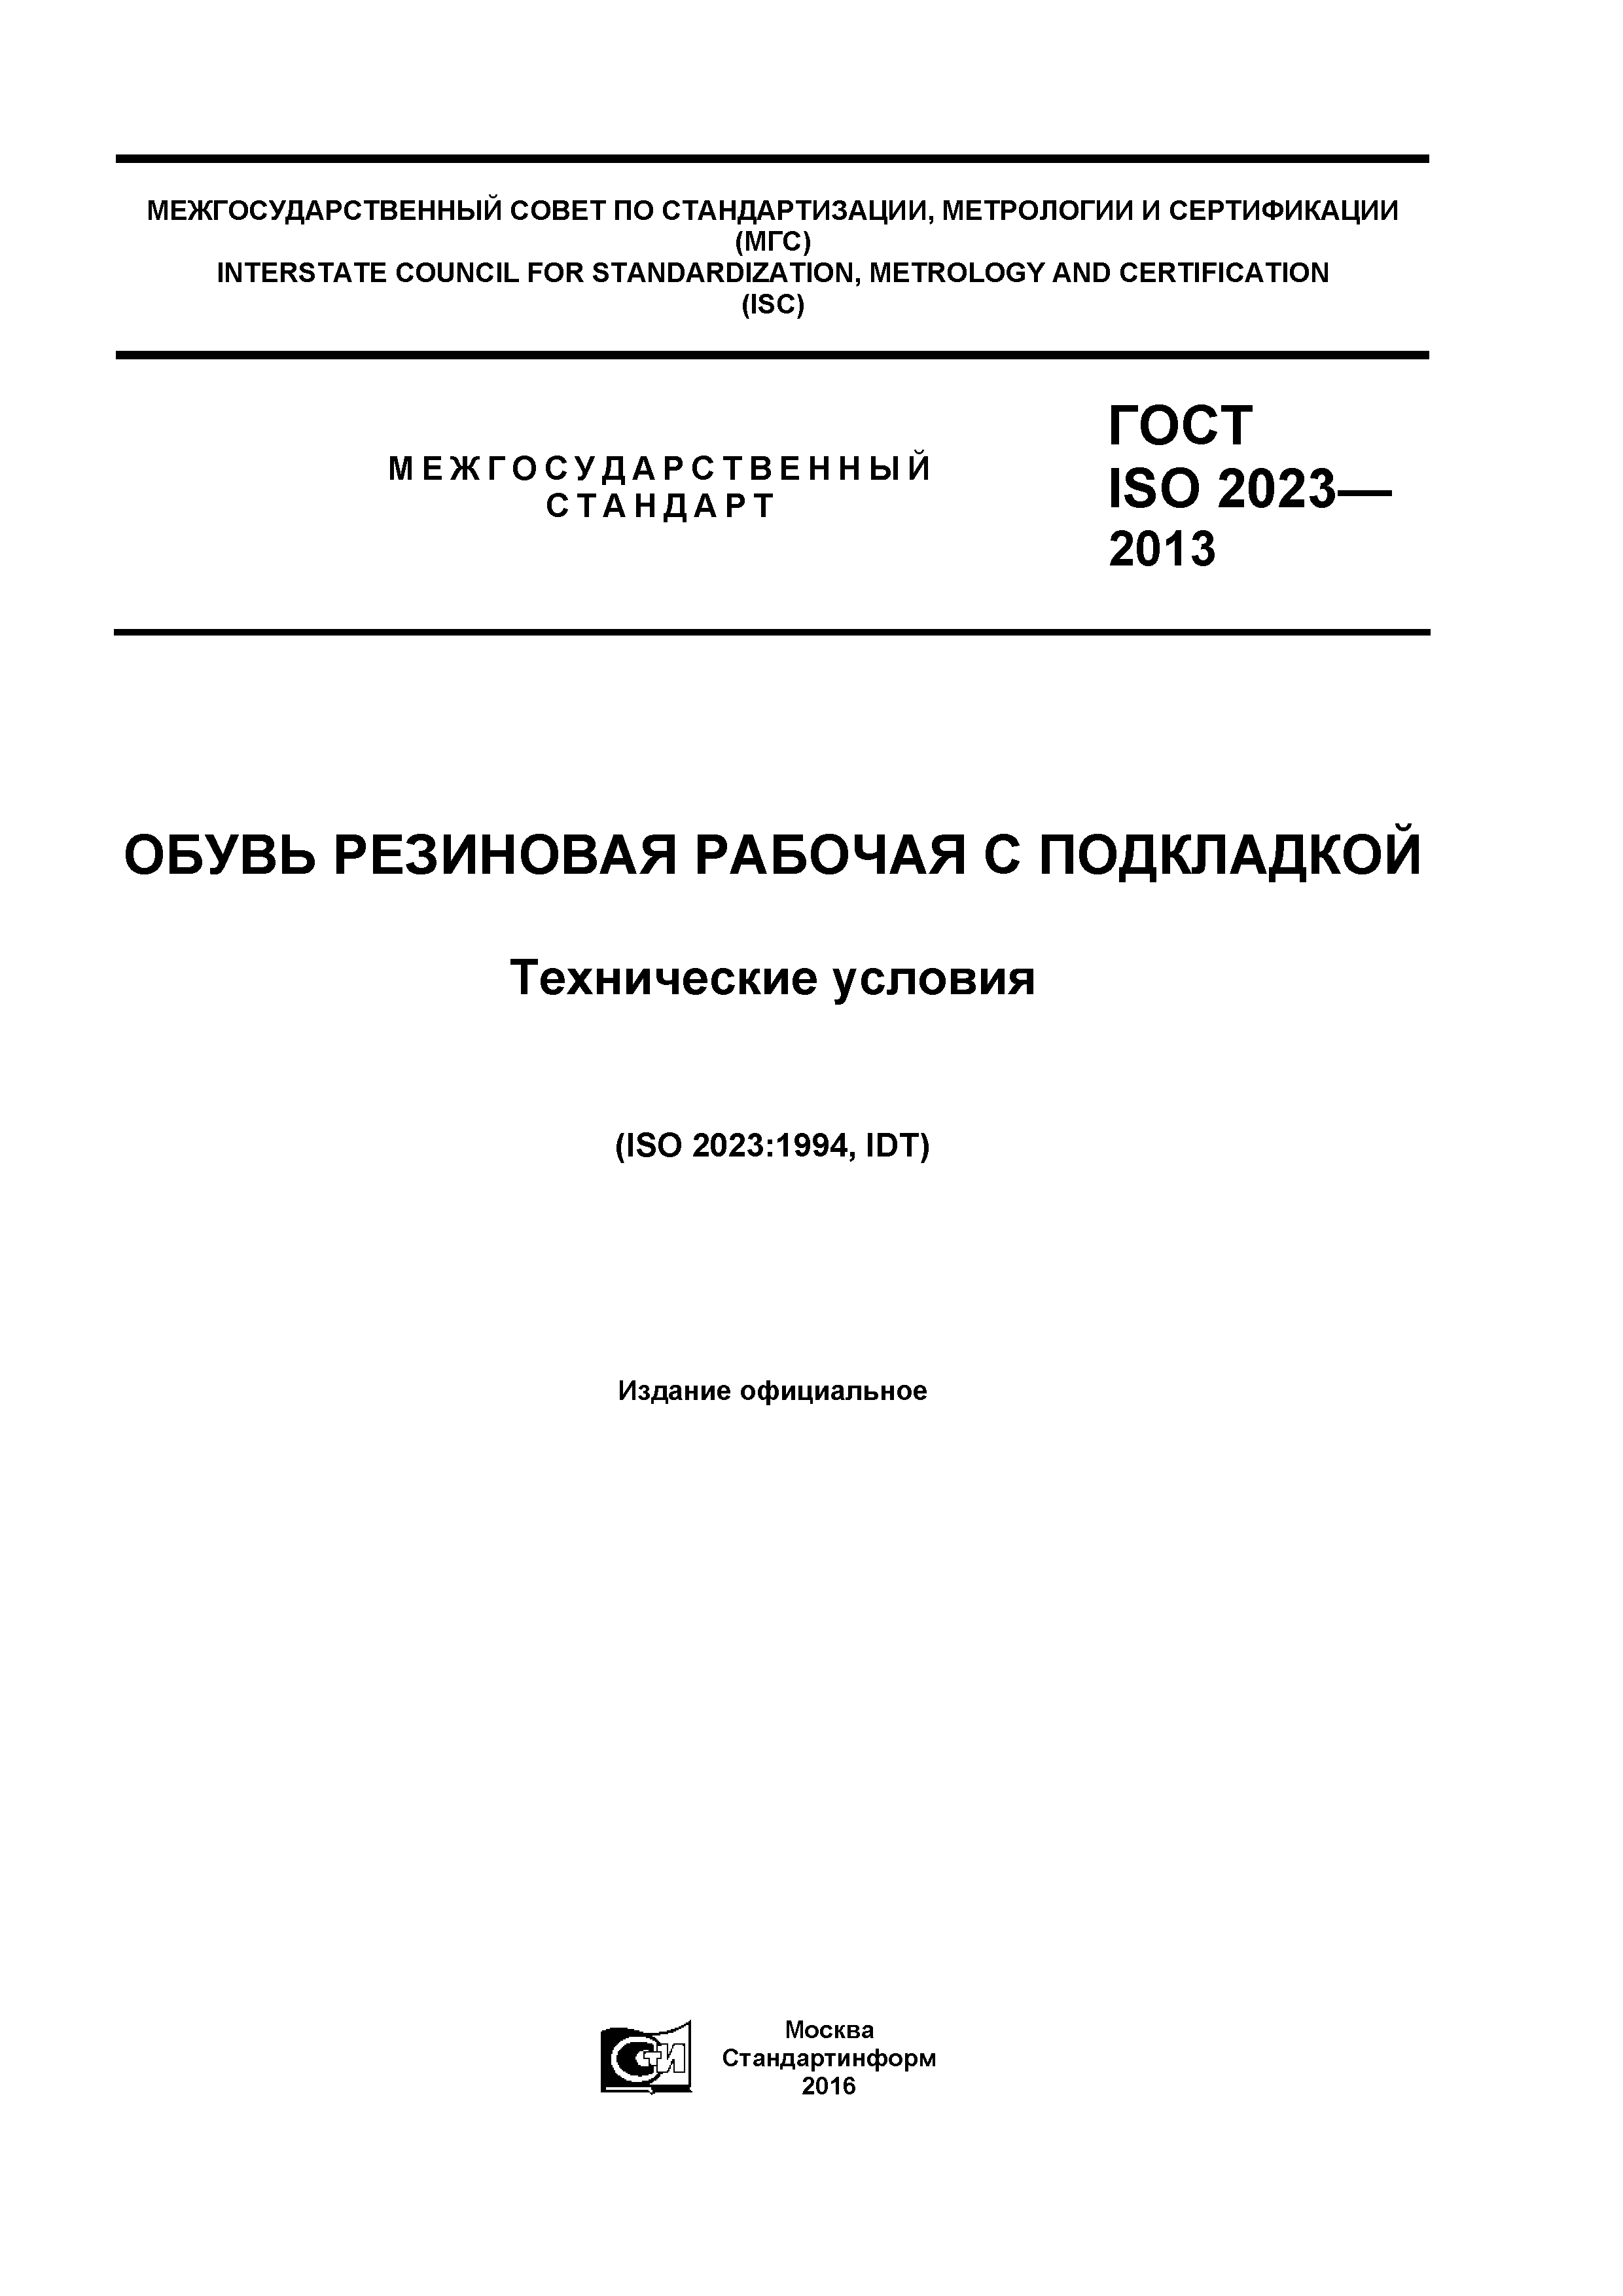 ГОСТ ISO 2023-2013